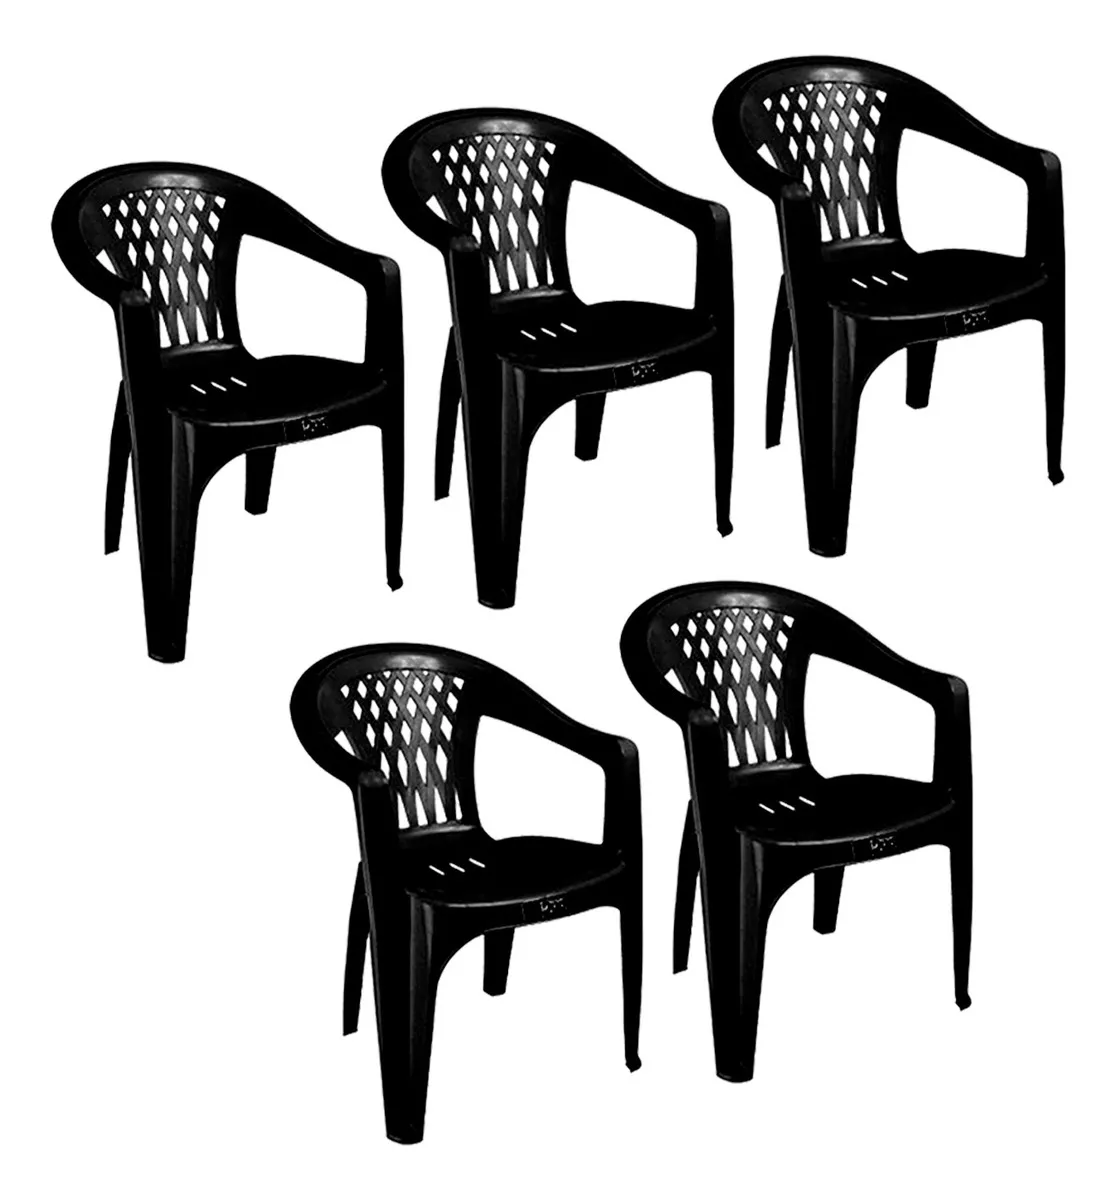 Primeira imagem para pesquisa de cadeiras de plastico